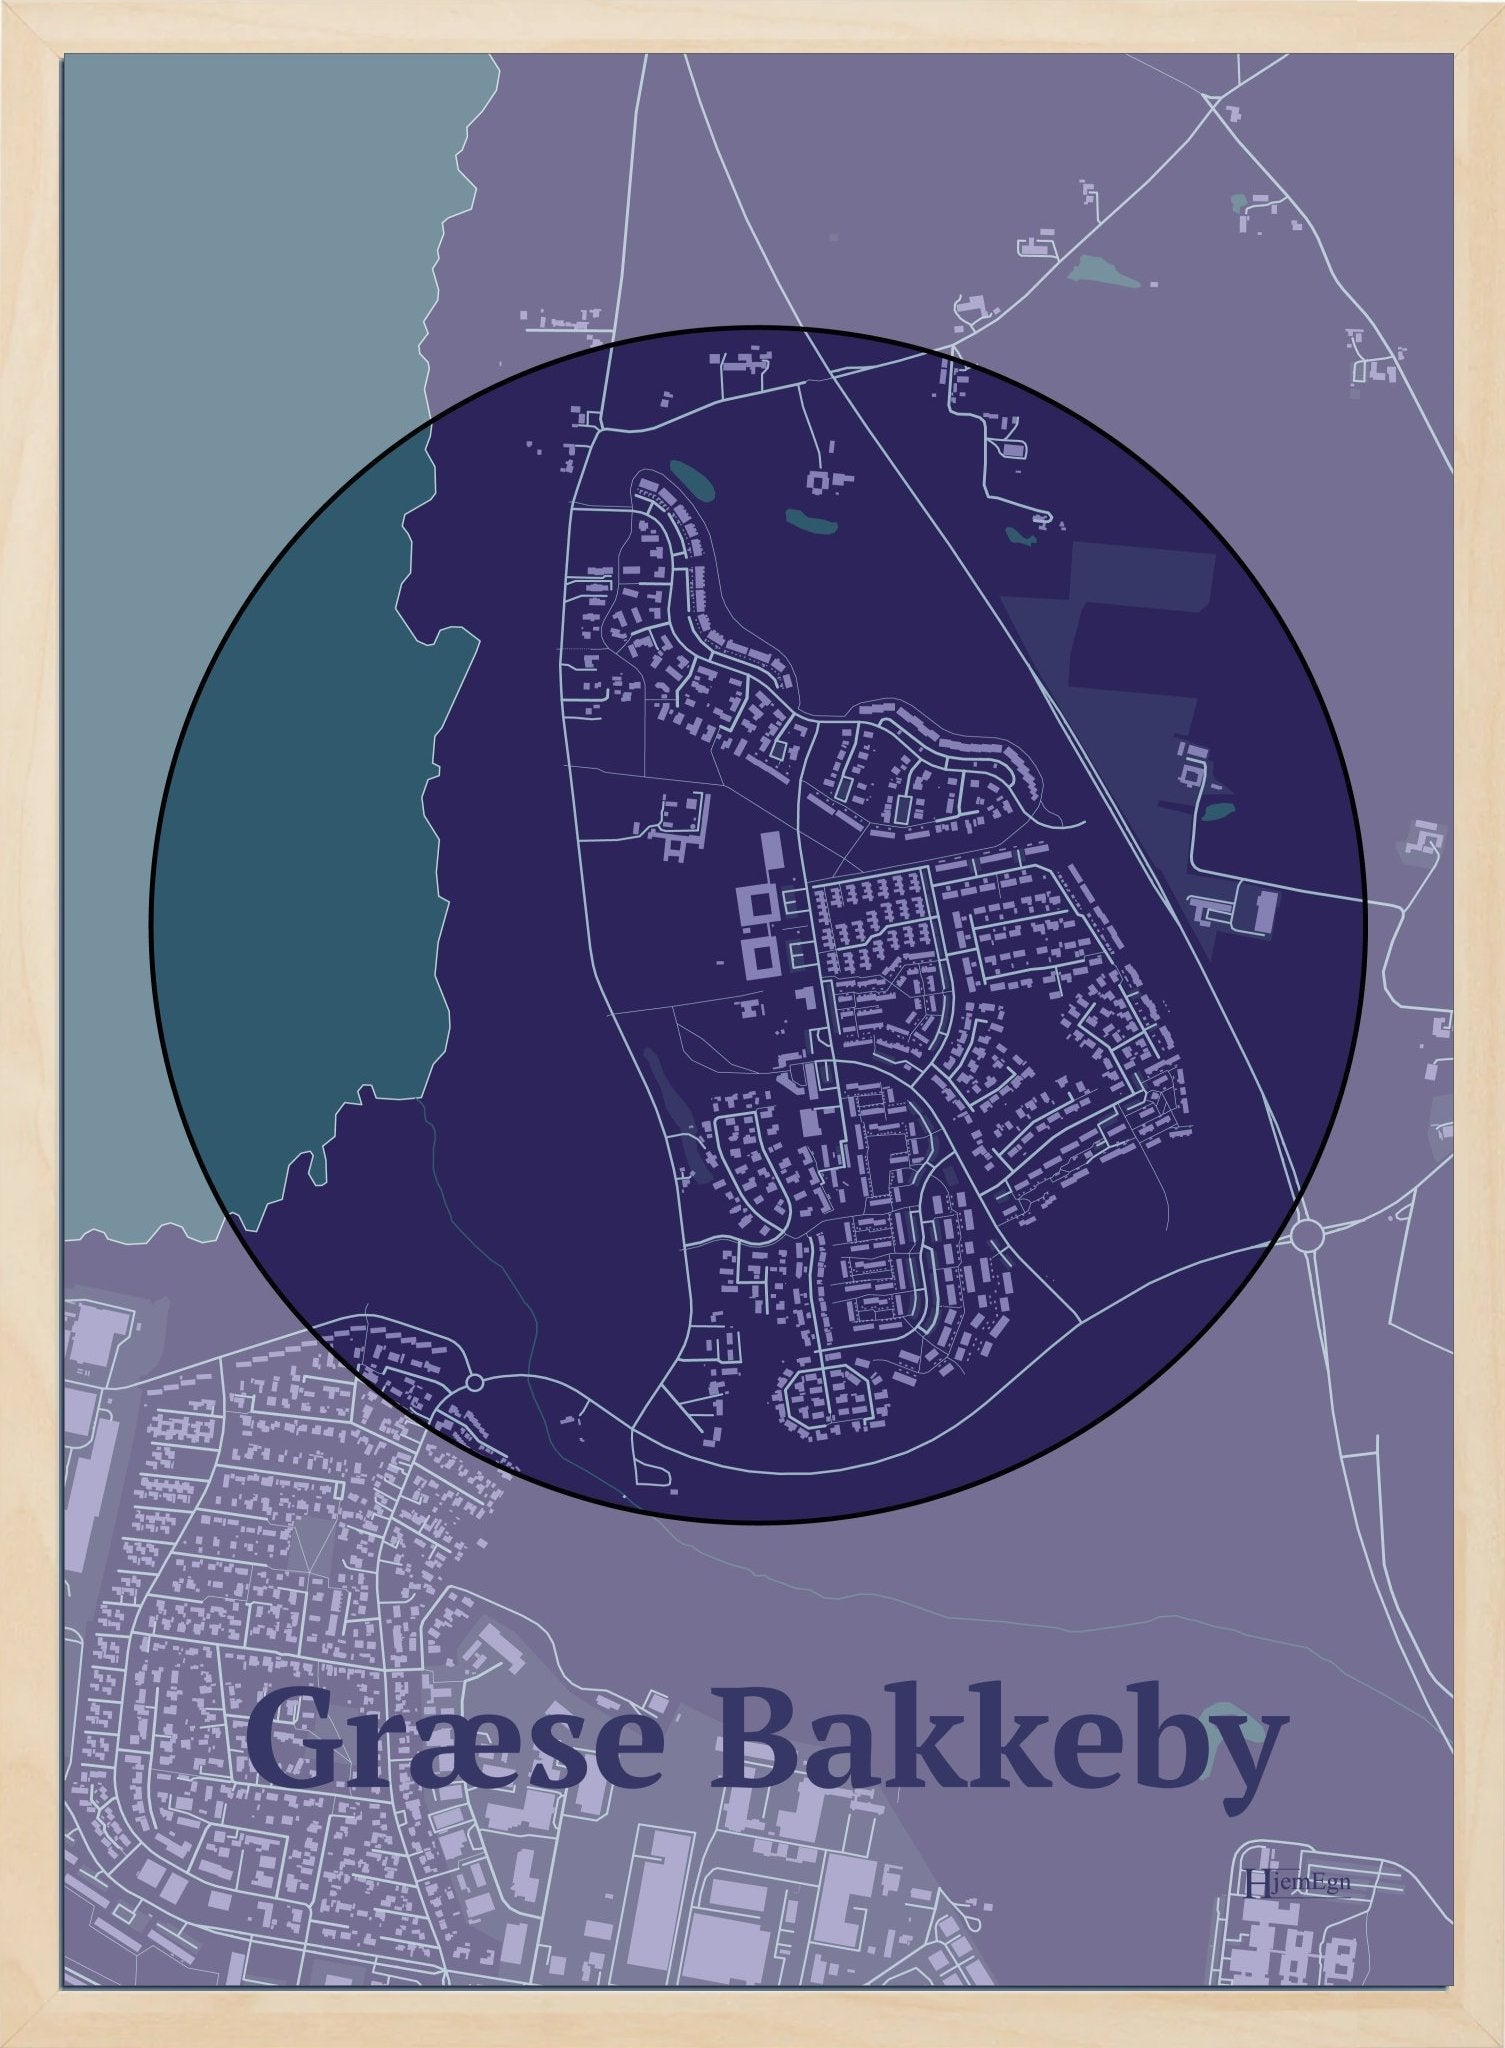 Græse Bakkeby plakat i farve mørk lilla og HjemEgn.dk design centrum. Design bykort for Græse Bakkeby